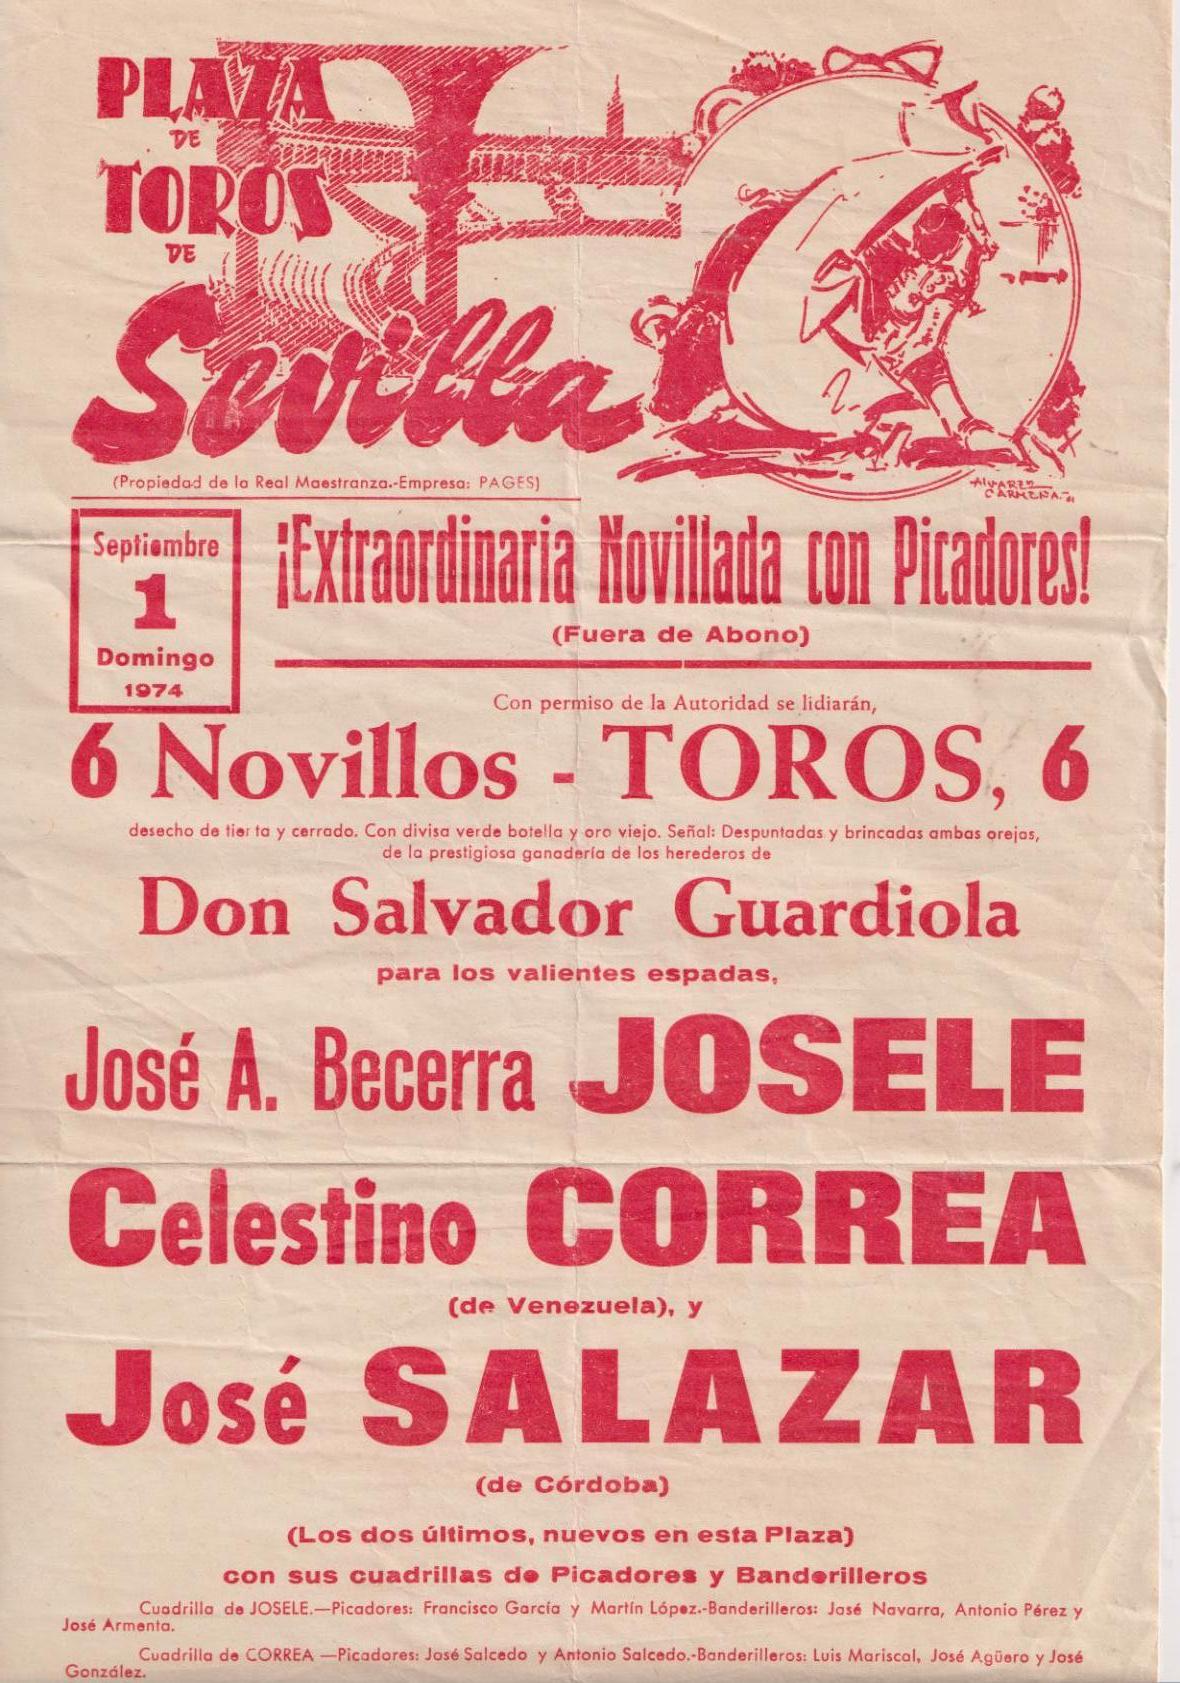 Cartel (42x21) Plaza de Toros de Sevilla. Extraordinaria Novillada con Picadores. 1 de Septiembre 1974